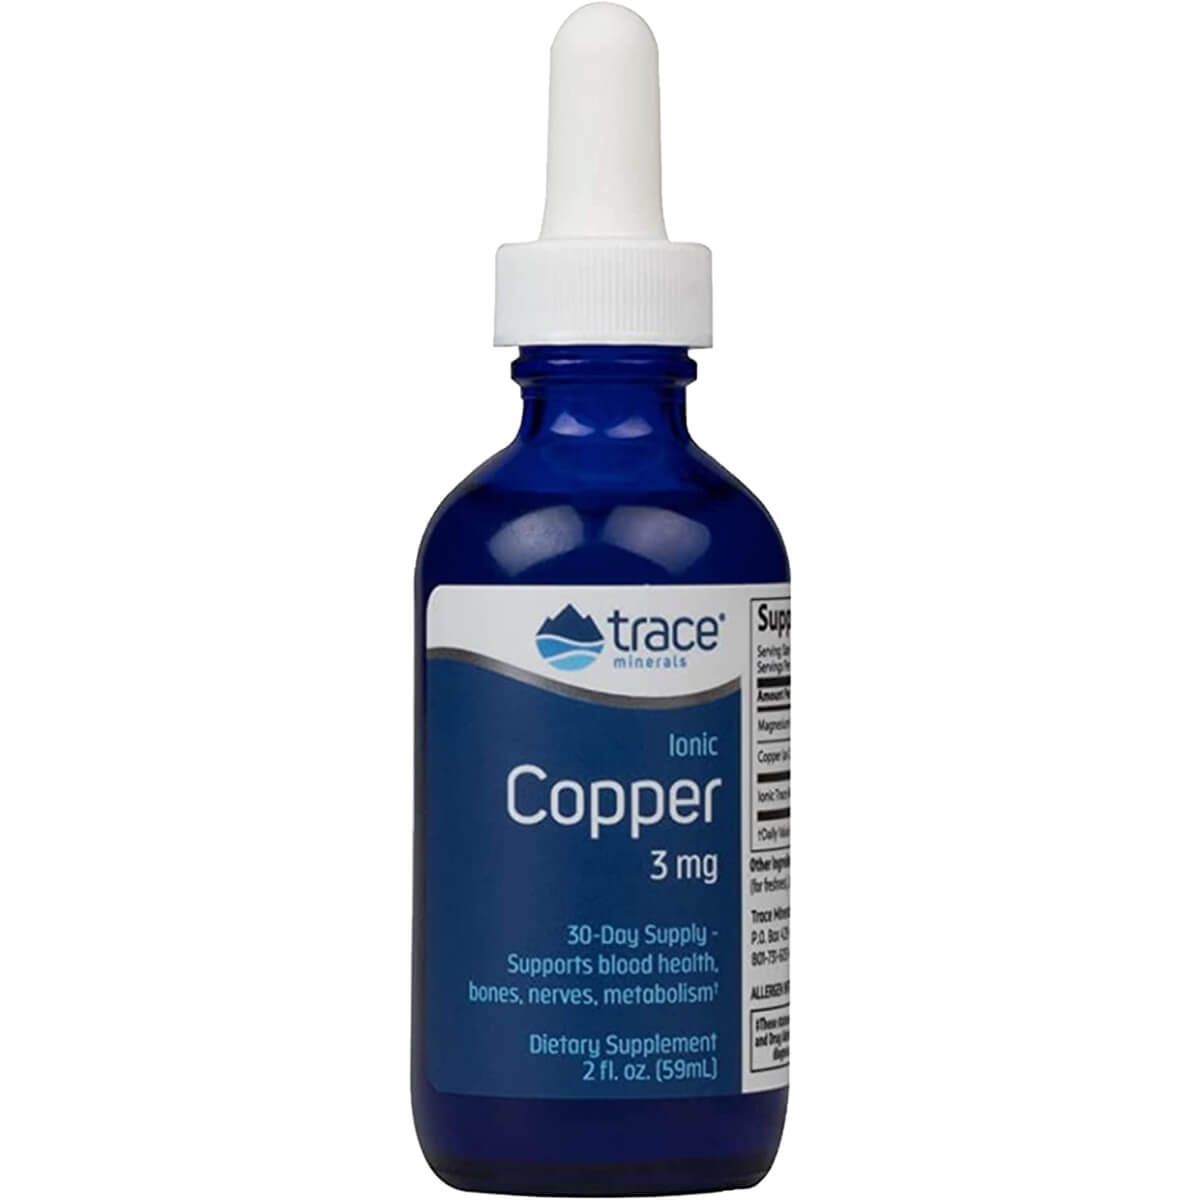 Trace Minerals Ionic Copper Liquid 3mg 2 fl oz (59ml) | Premium Supplements at MYSUPPLEMENTSHOP